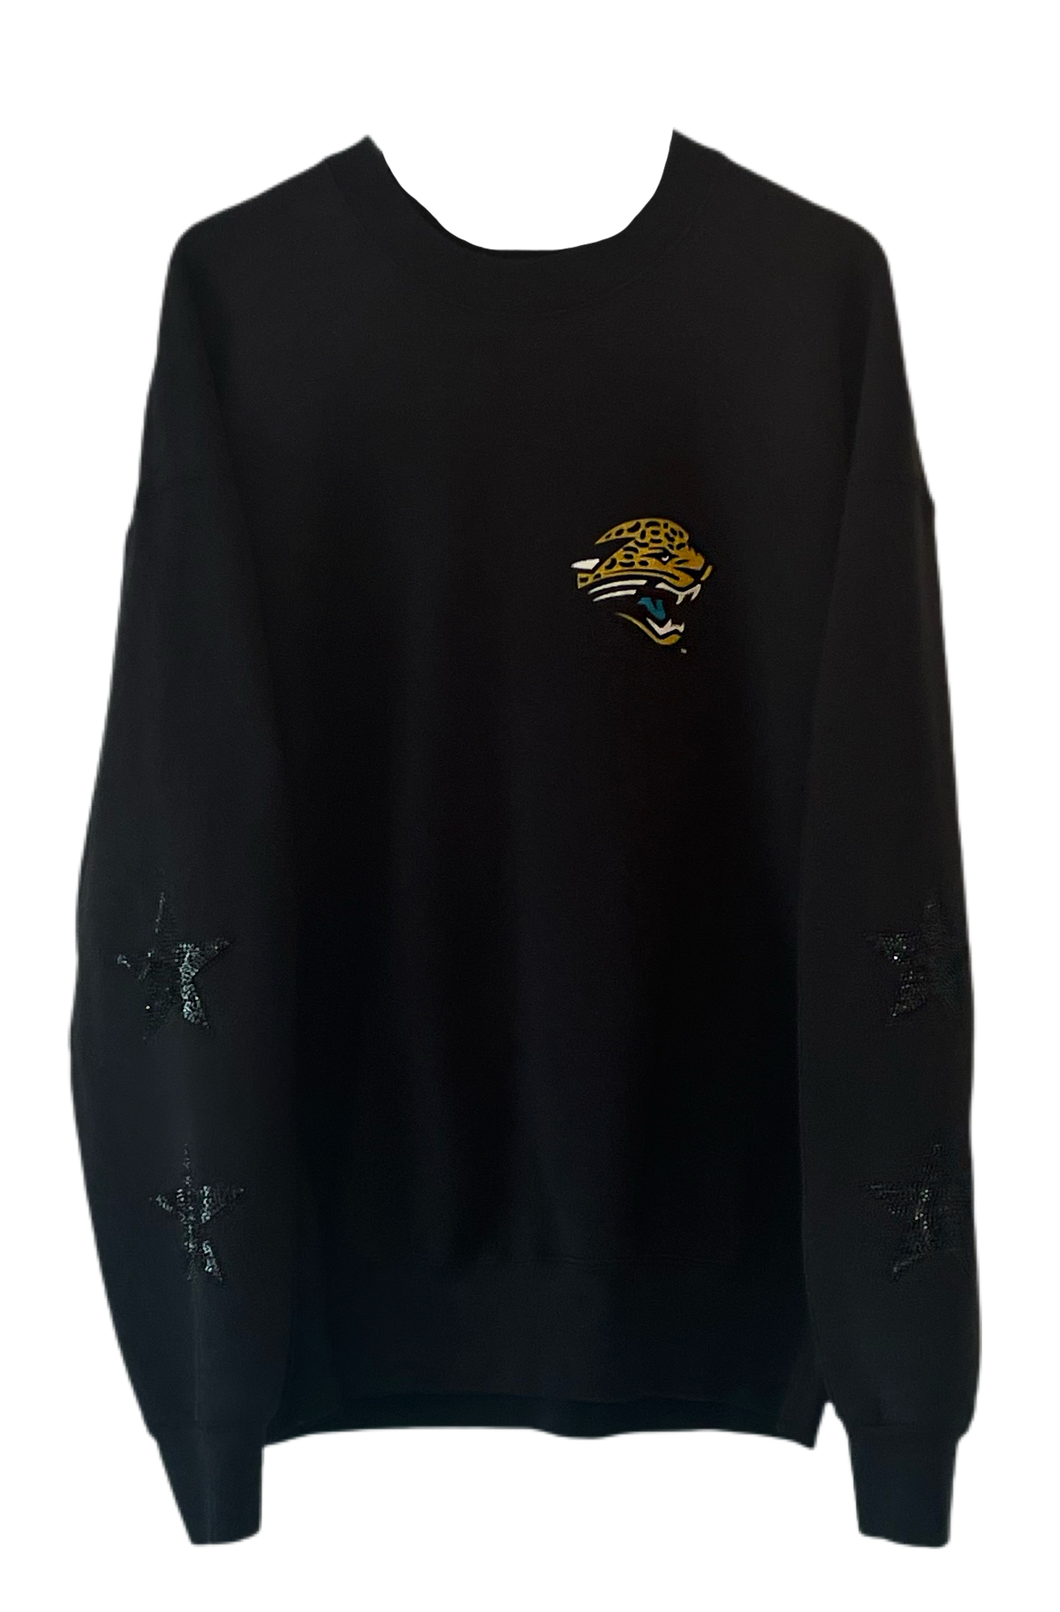 Jacksonville Jaguars, NFL One of a KIND Vintage Sweatshirt with Black Crystal Star Design